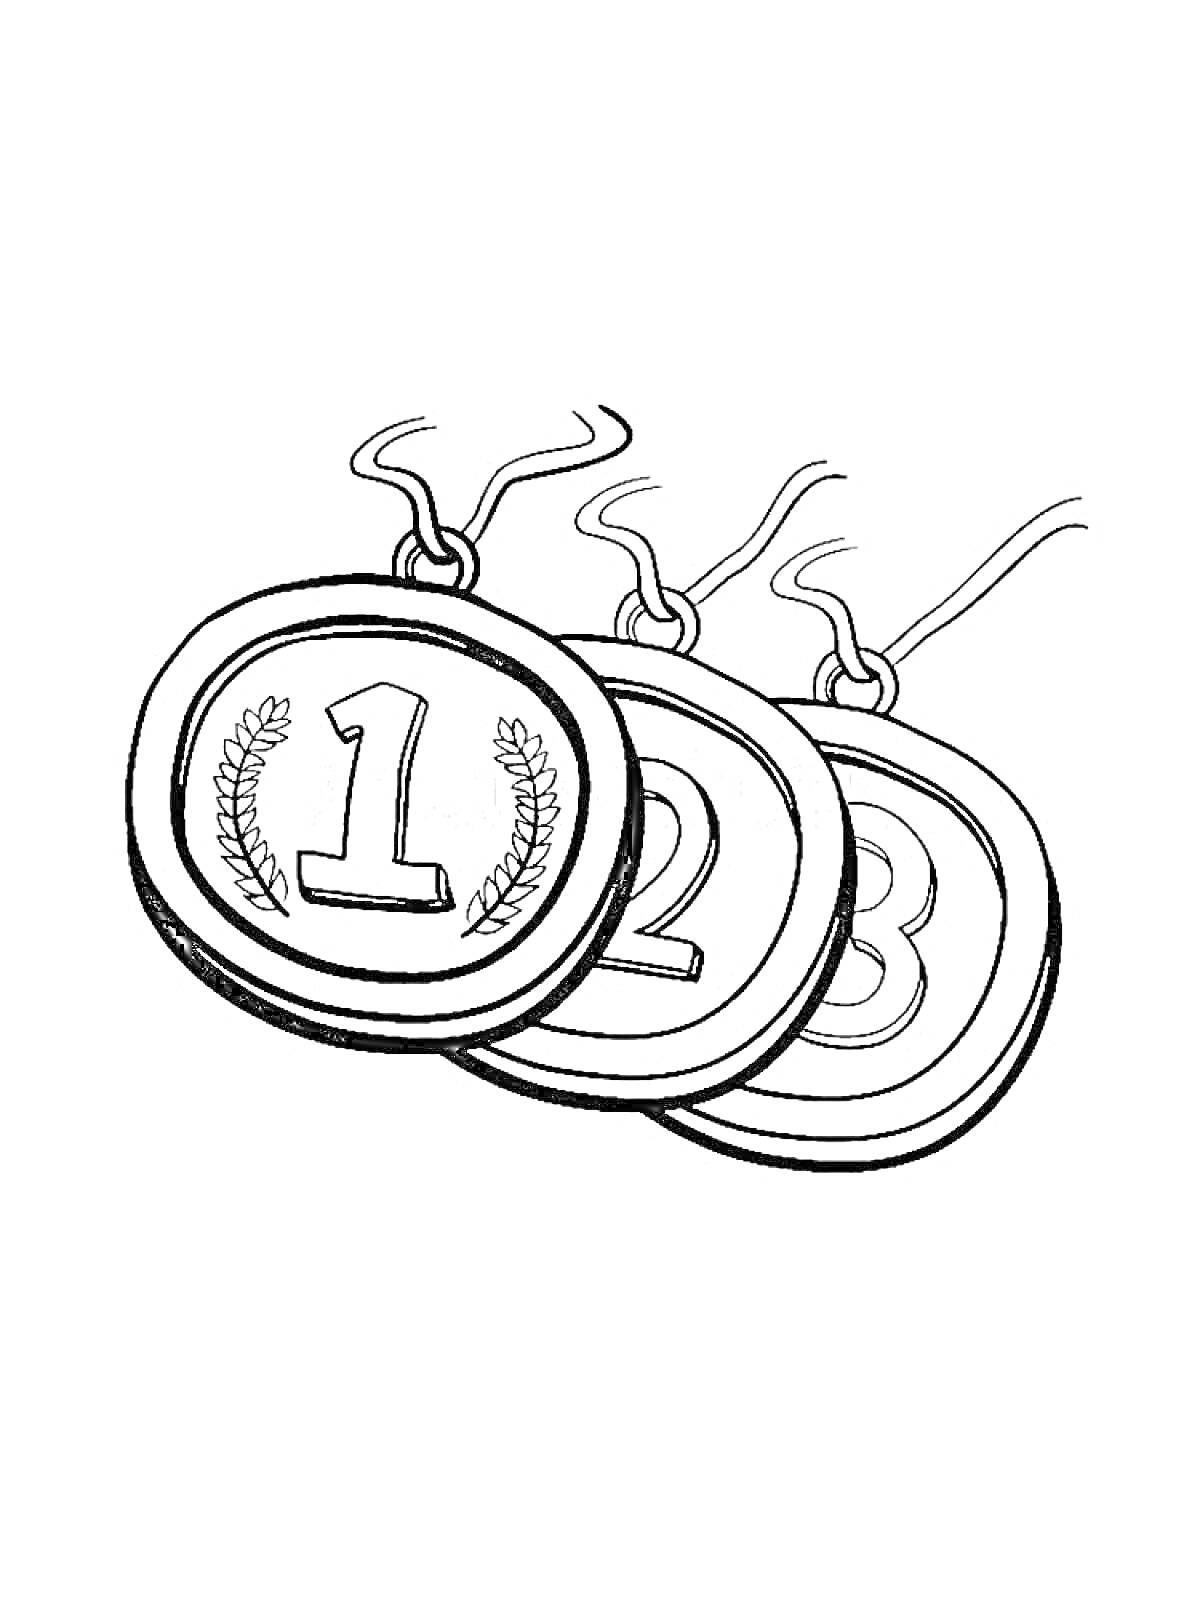 Раскраска Медали с номерами 1, 2 и 3 и изображением лавровых ветвей